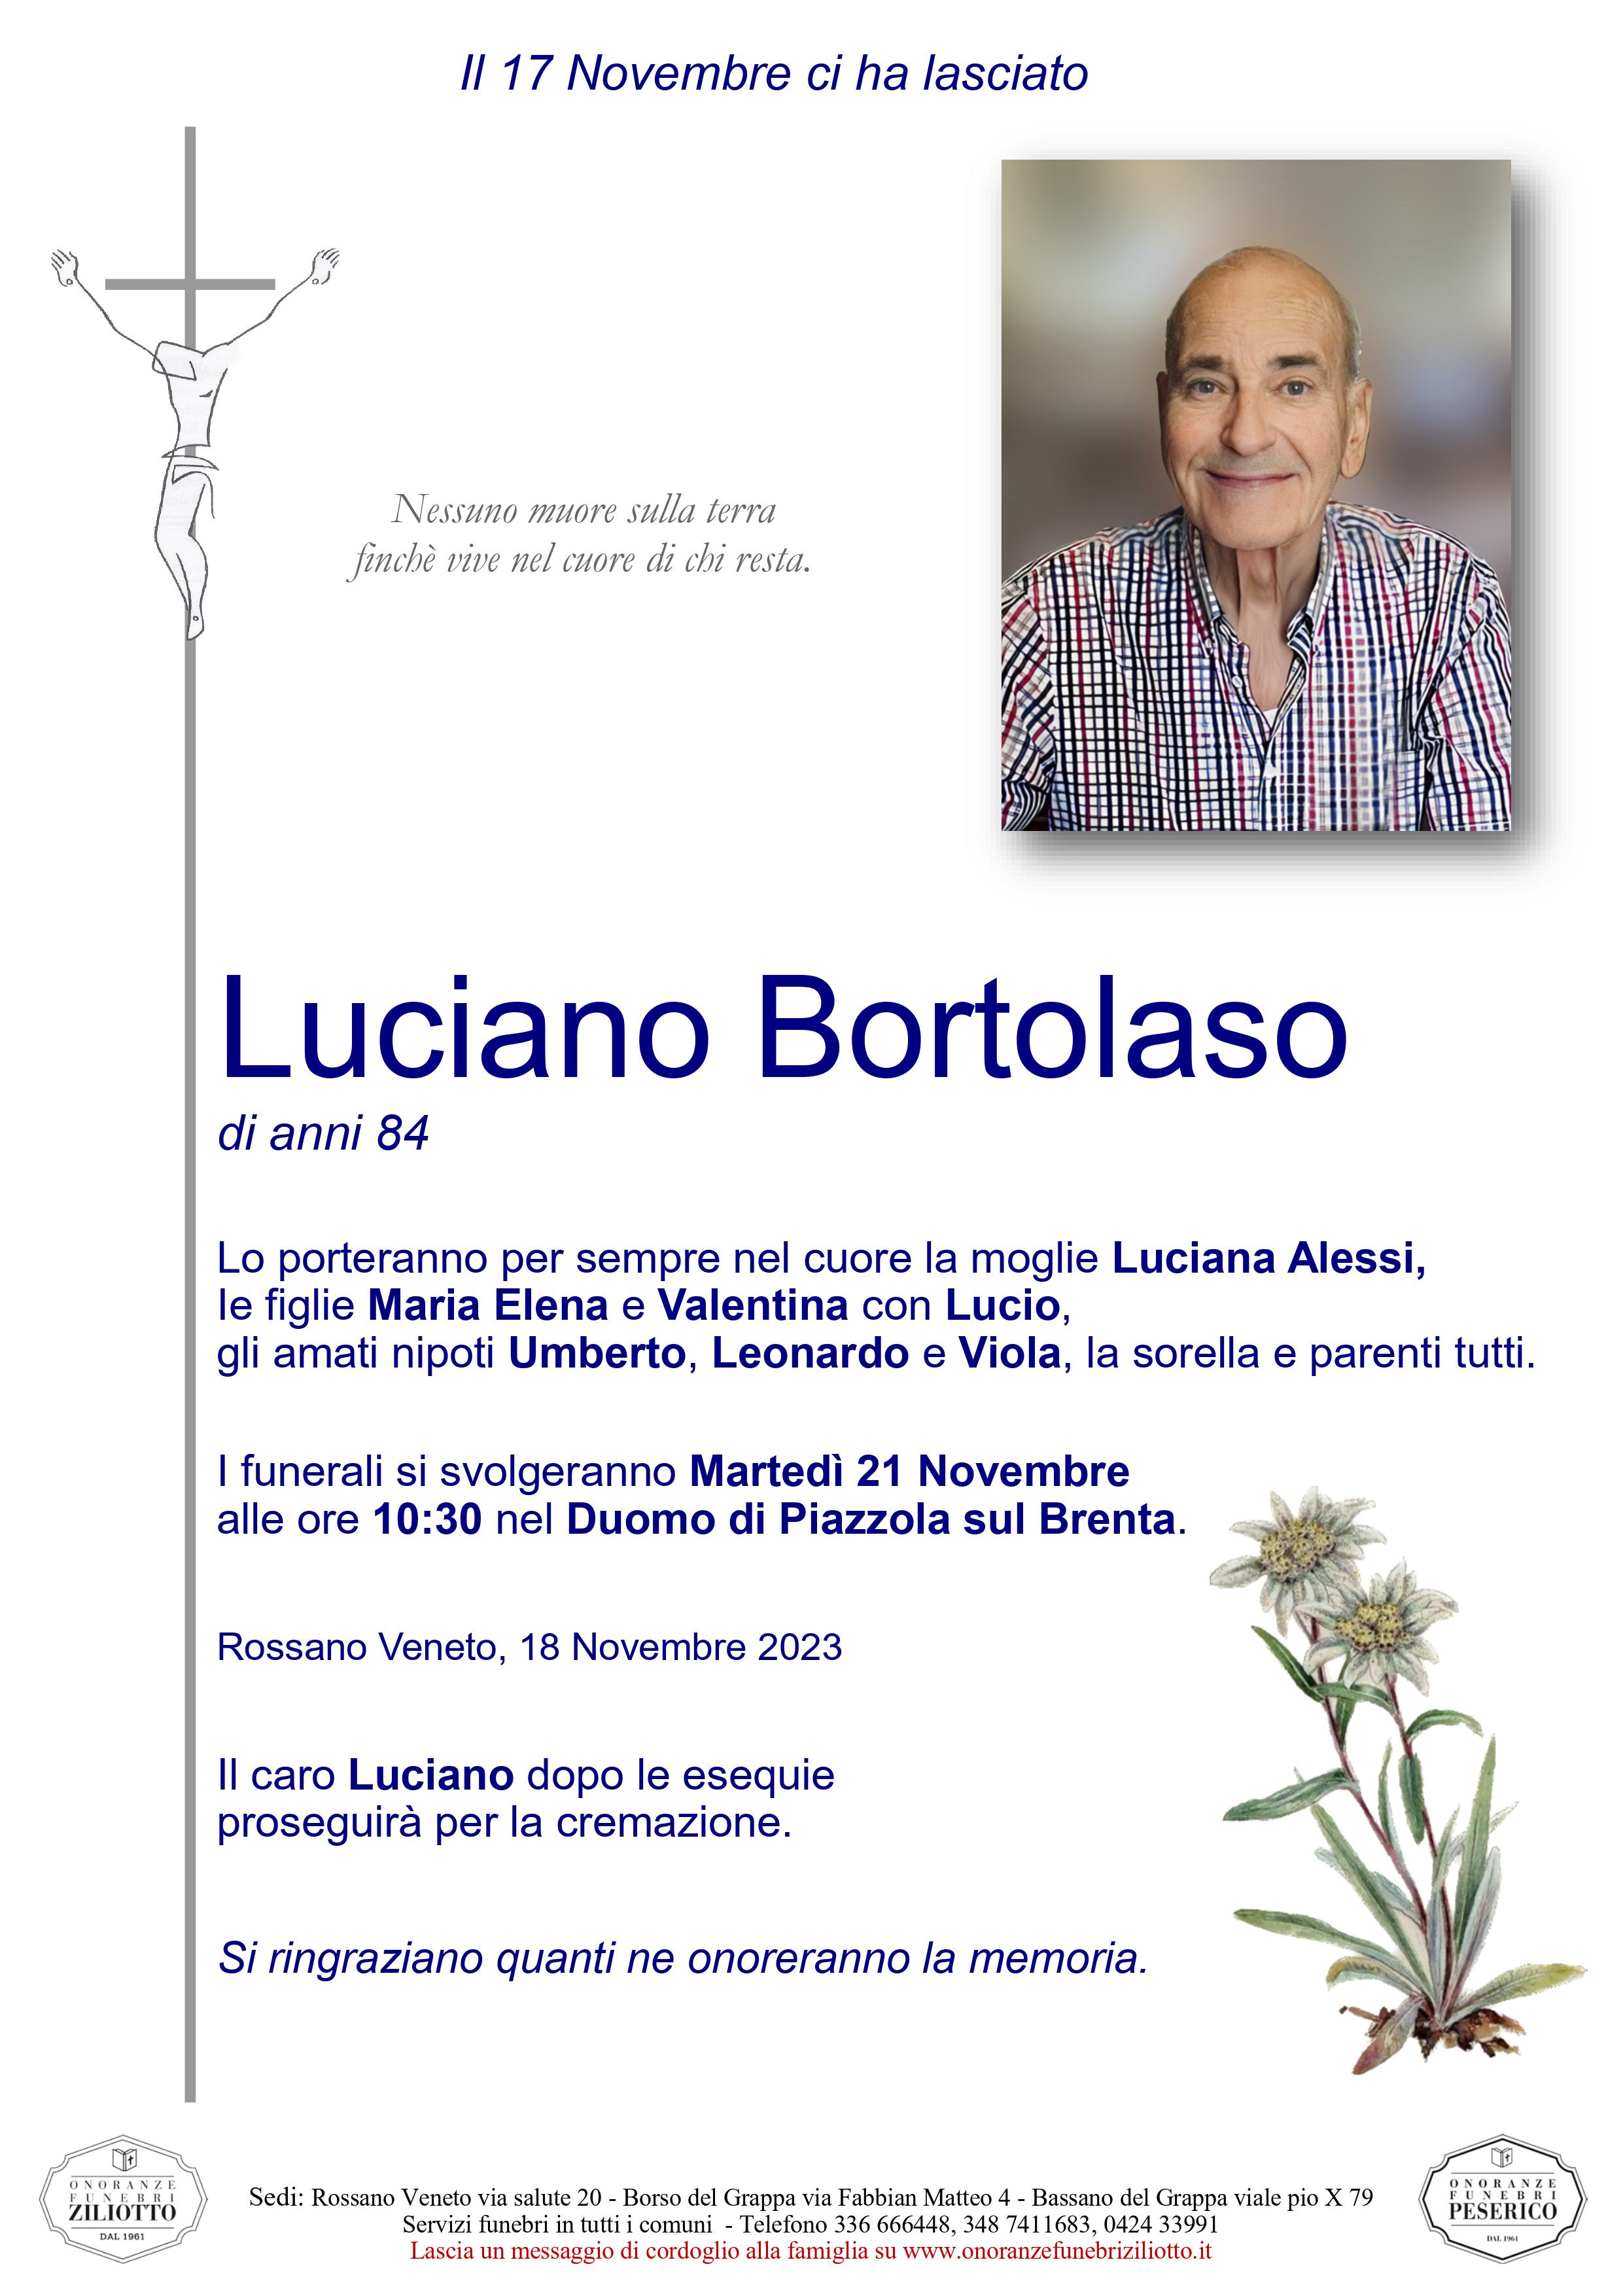 Luciano Bortolaso - 84 anni - Piazzola sul Brenta